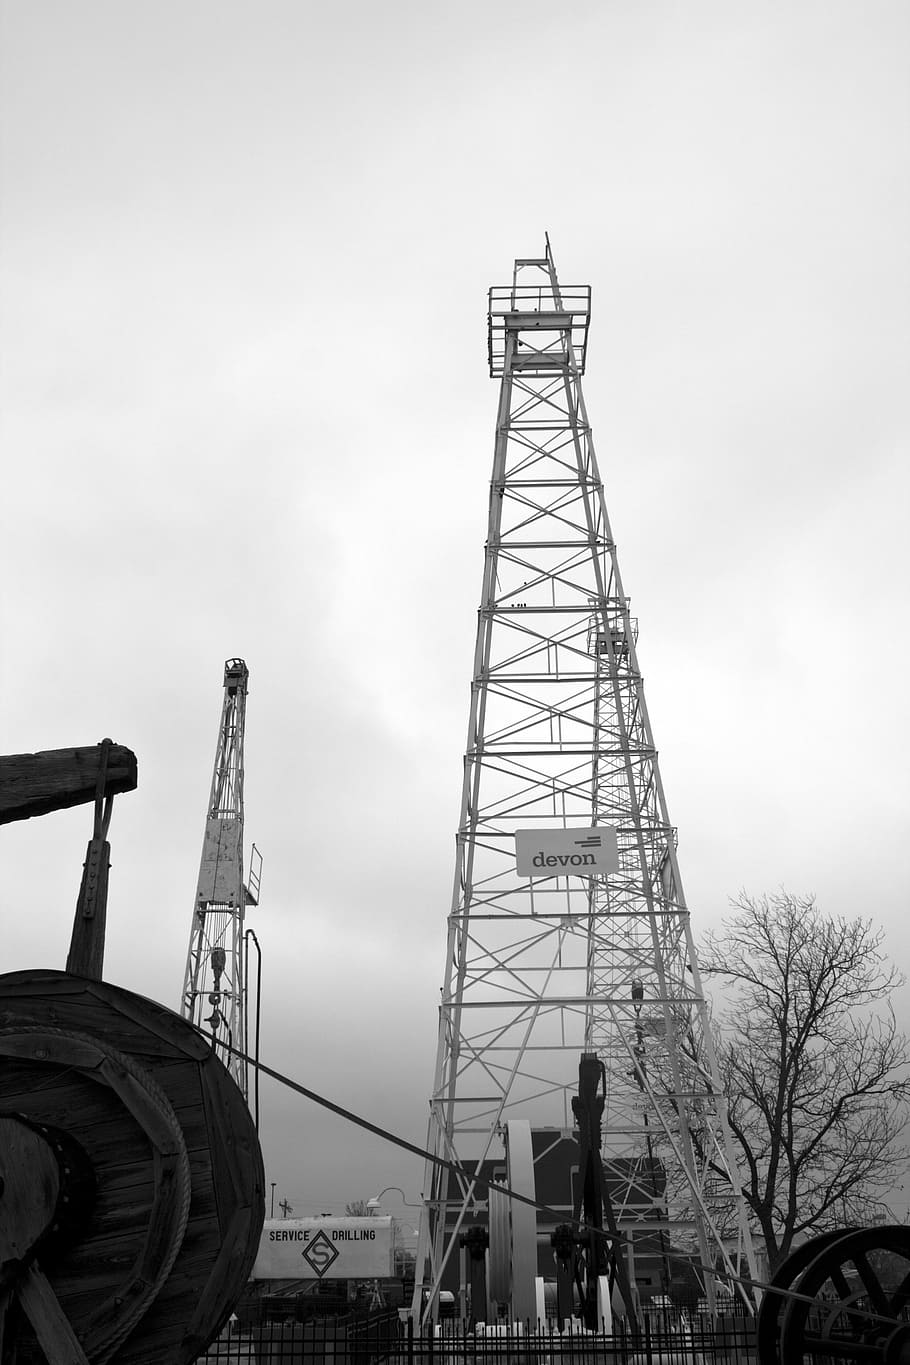 rig, drilling, oil, petroleum, exploration, industrial, construction, HD wallpaper